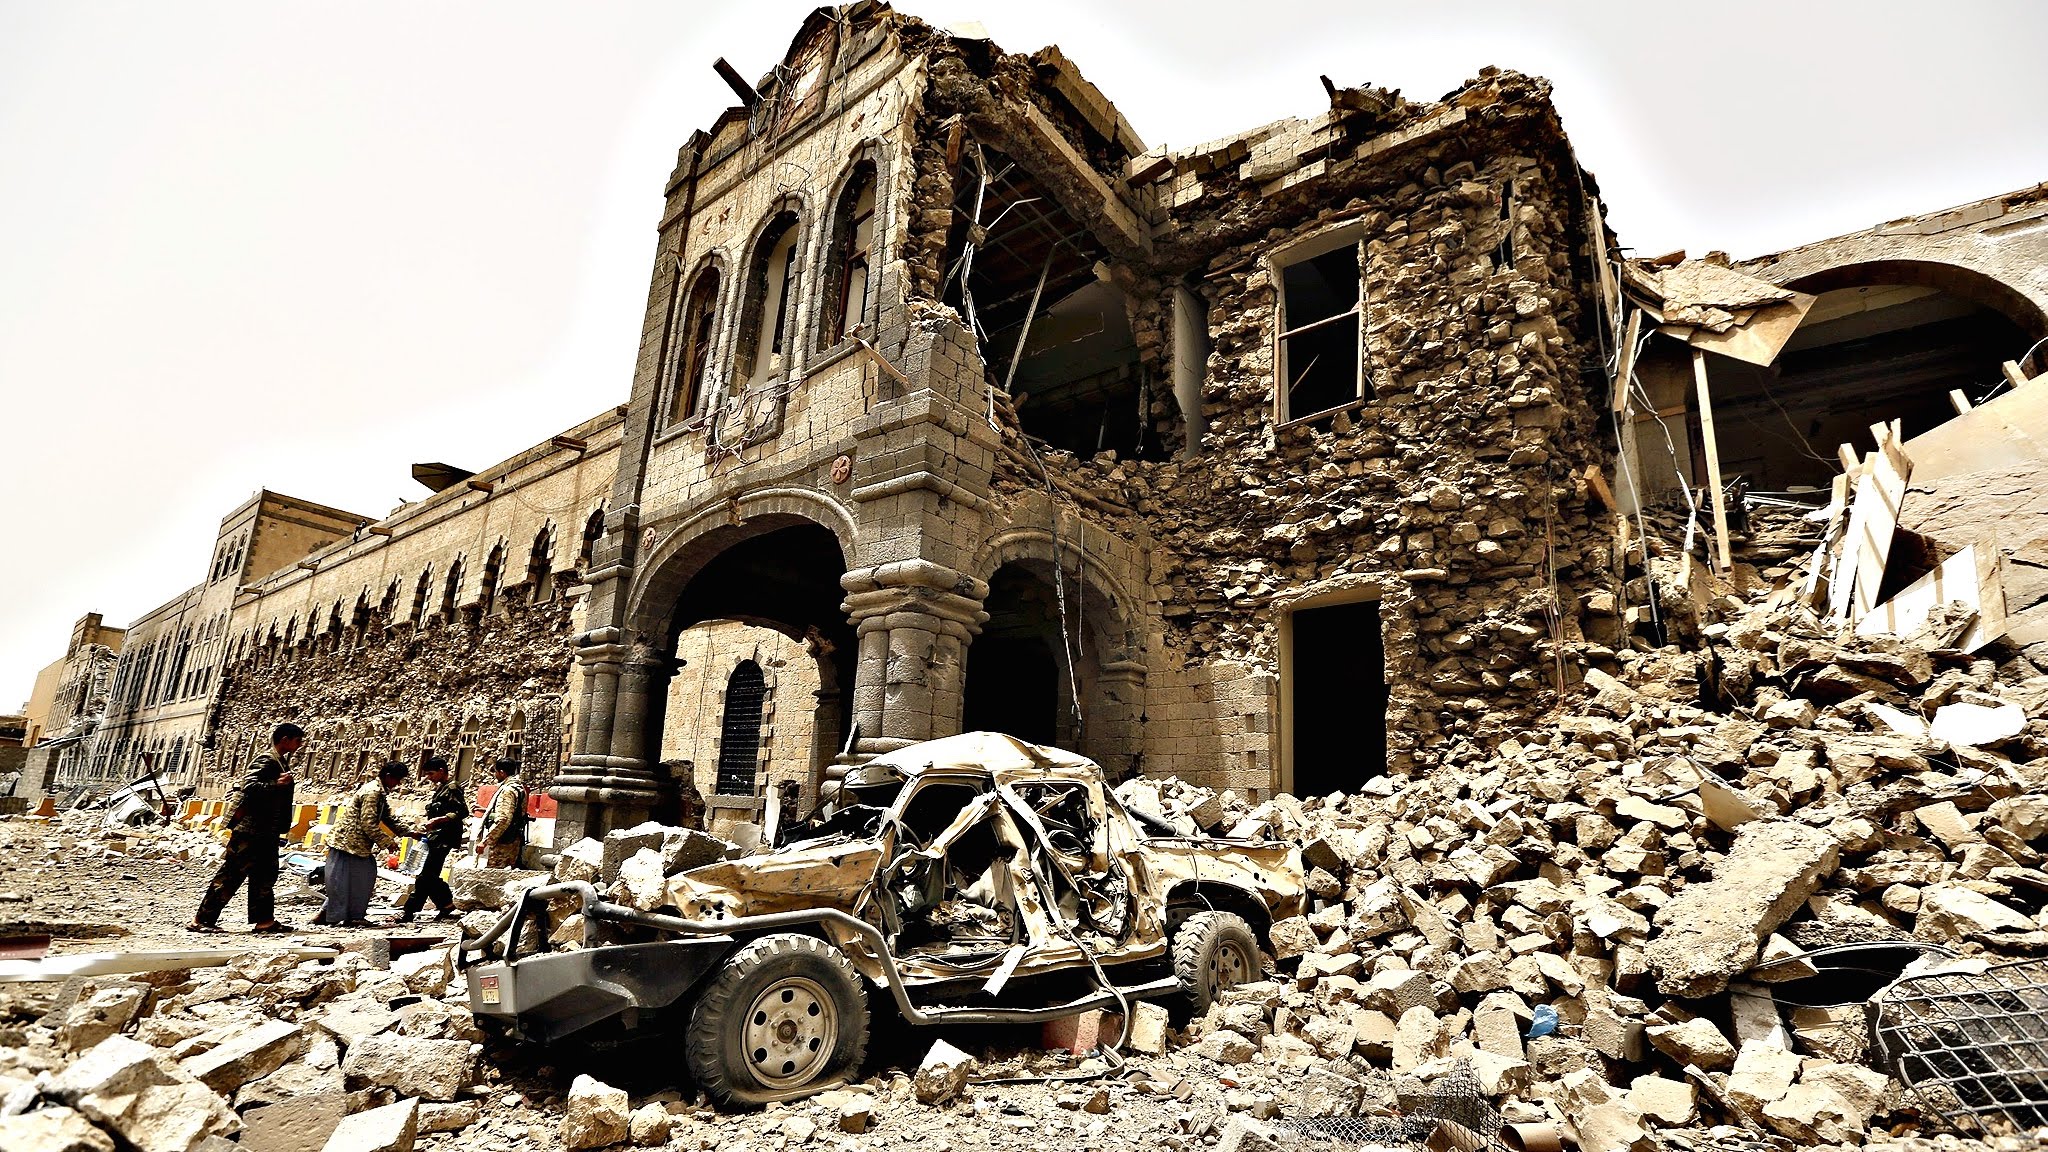 Destrucción de la antigua ciudad de Sana'a, declarada Patrimonio de la Humanidad por la UNESCO, por una campaña de bombardeos saudíes en Sana'a, Yemen, 12 de junio de 2015. EuroNews | Captura de pantalla